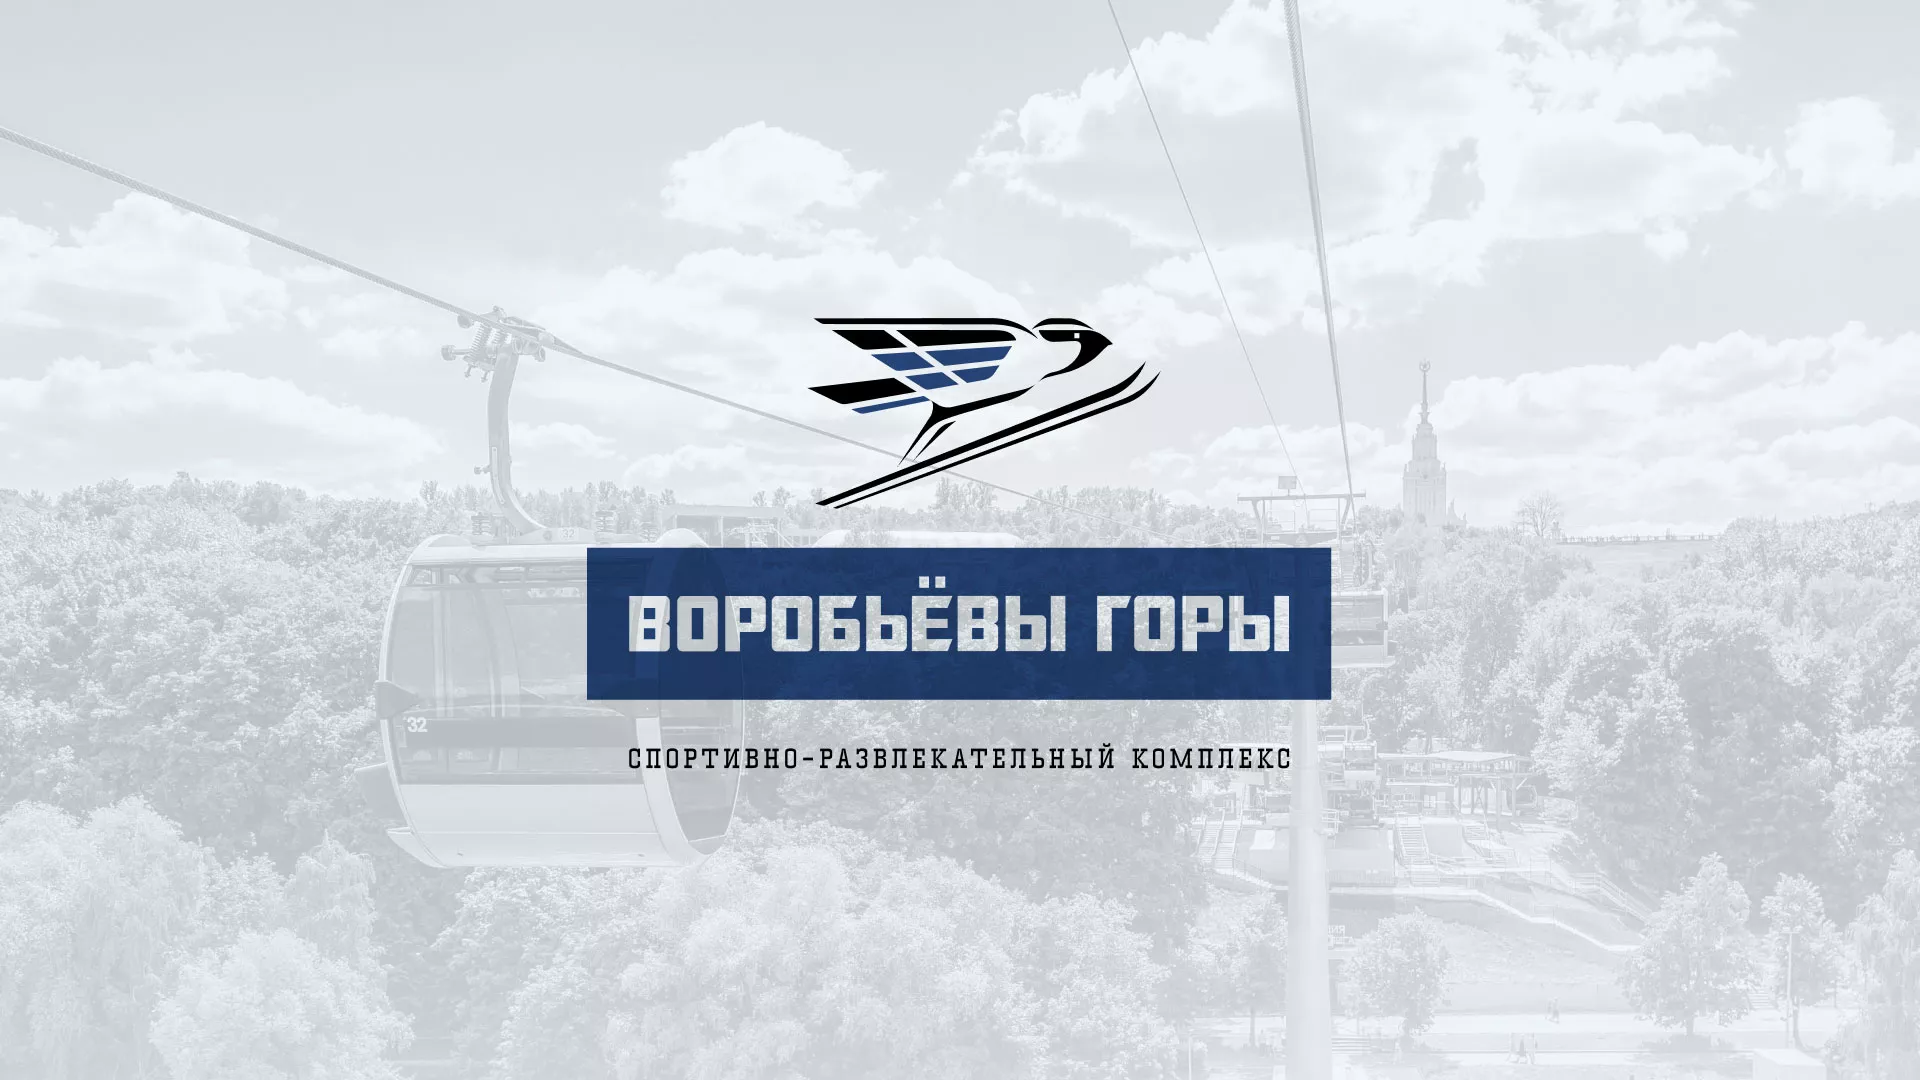 Разработка сайта в Новосокольниках для спортивно-развлекательного комплекса «Воробьёвы горы»